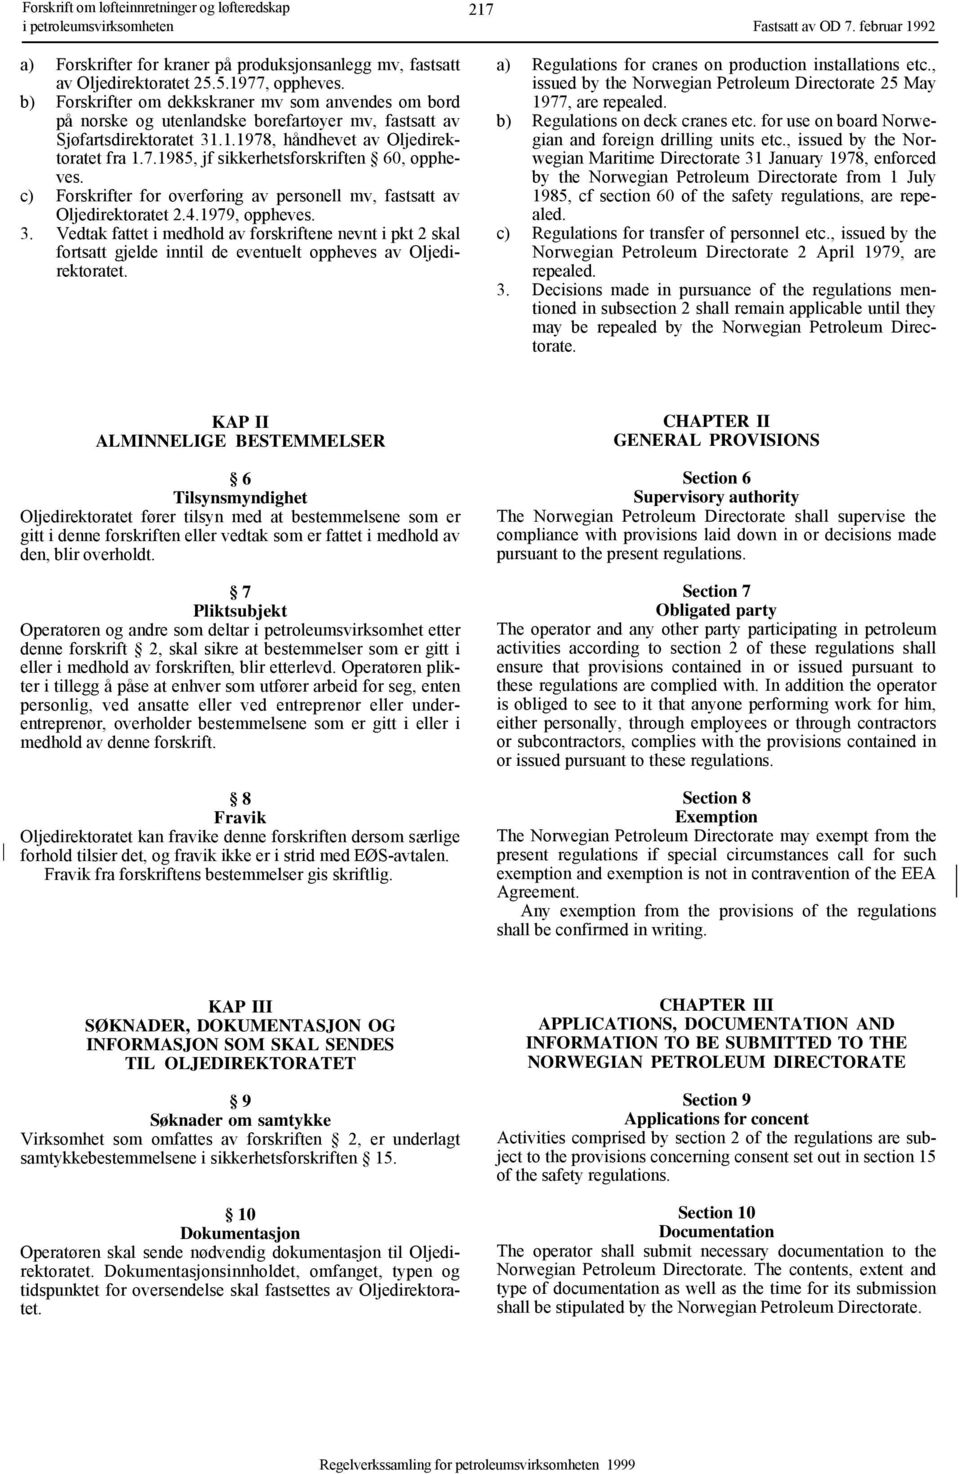 c) Forskrifter for overføring av personell mv, fastsatt av Oljedirektoratet 2.4.1979, oppheves. 3.